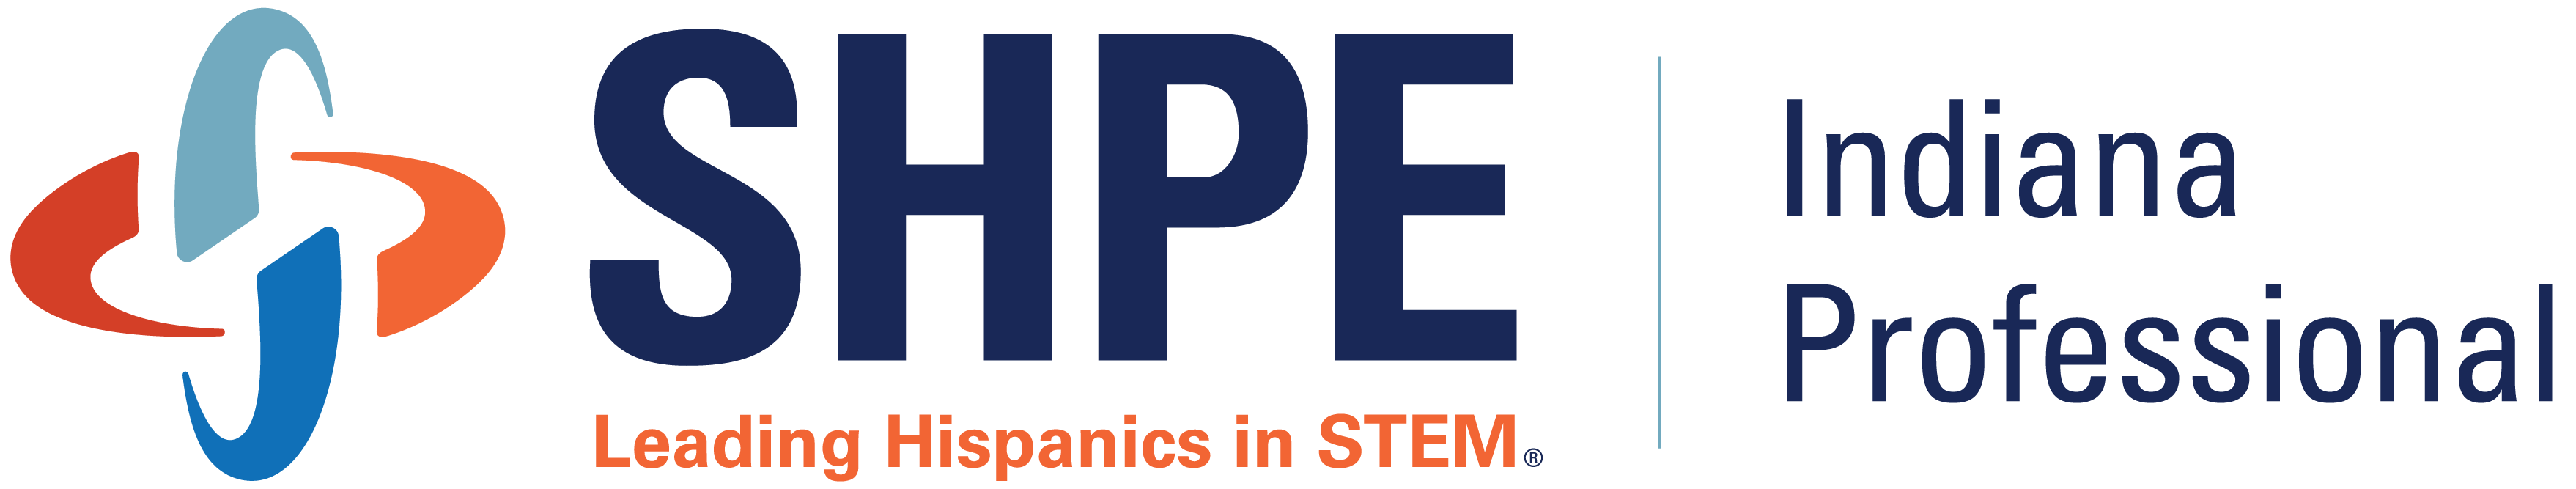 SHPE-Indiana logo